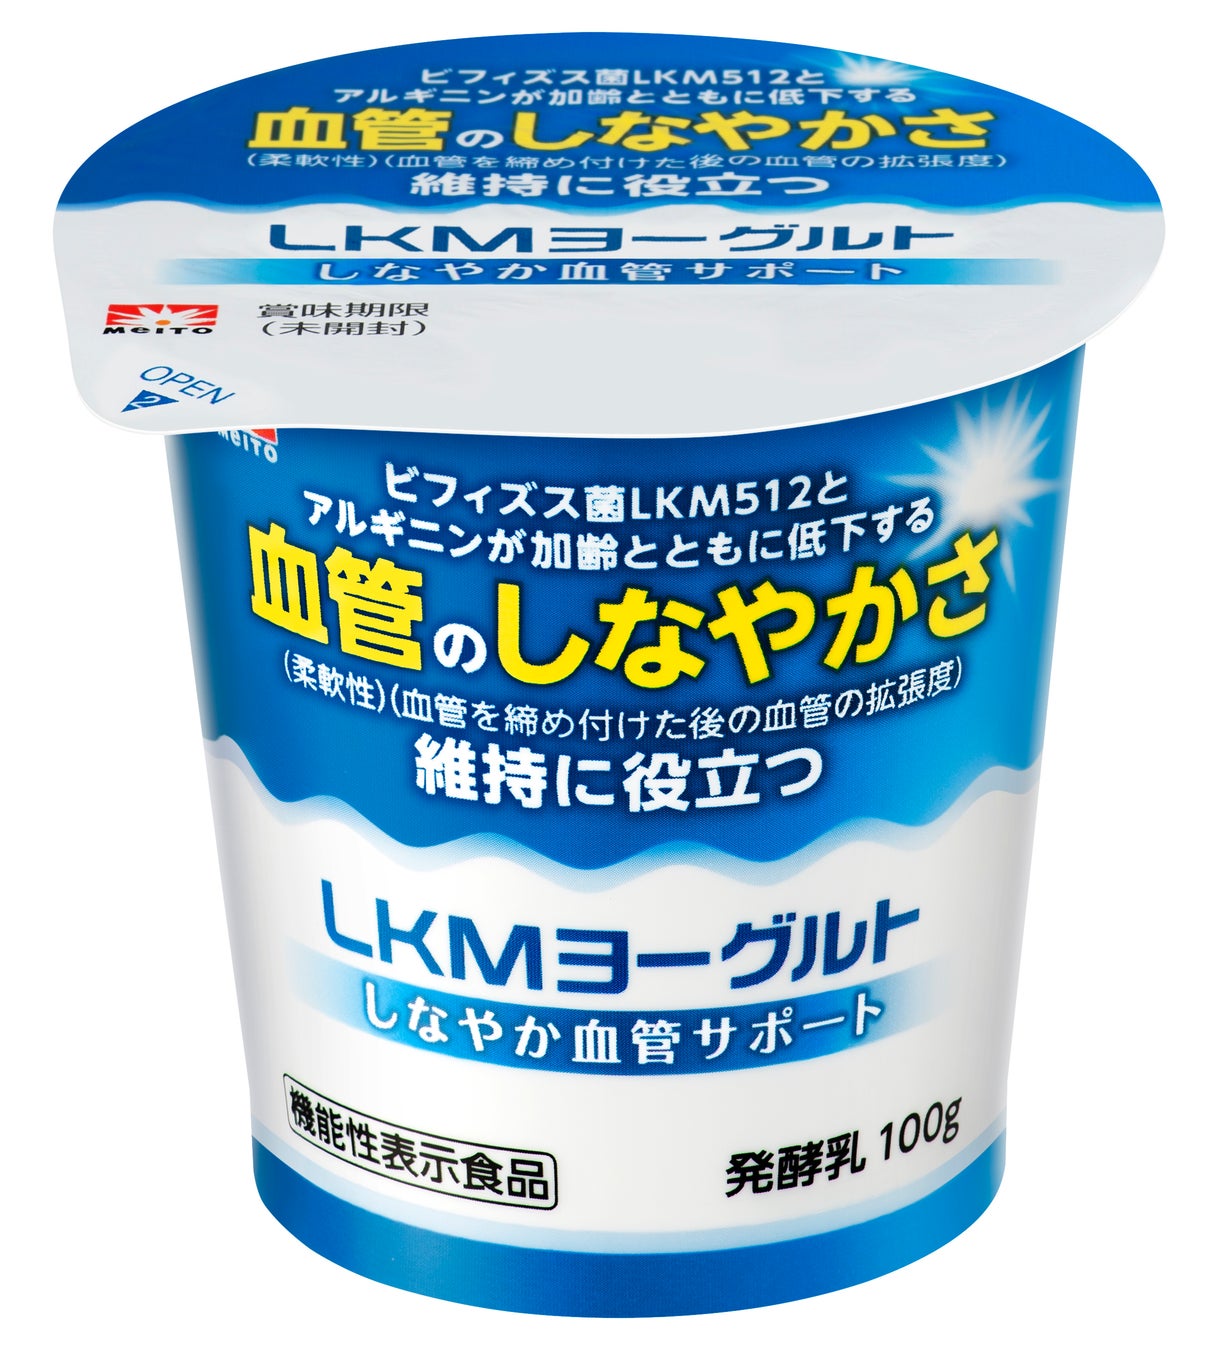 血管年齢が気になる方に朗報！日本初*1血管のしなやかさ維持に役立つヨーグルトの全国発売開始！機能性表示食品「LKMヨーグルトBV　しなやか血管サポート」